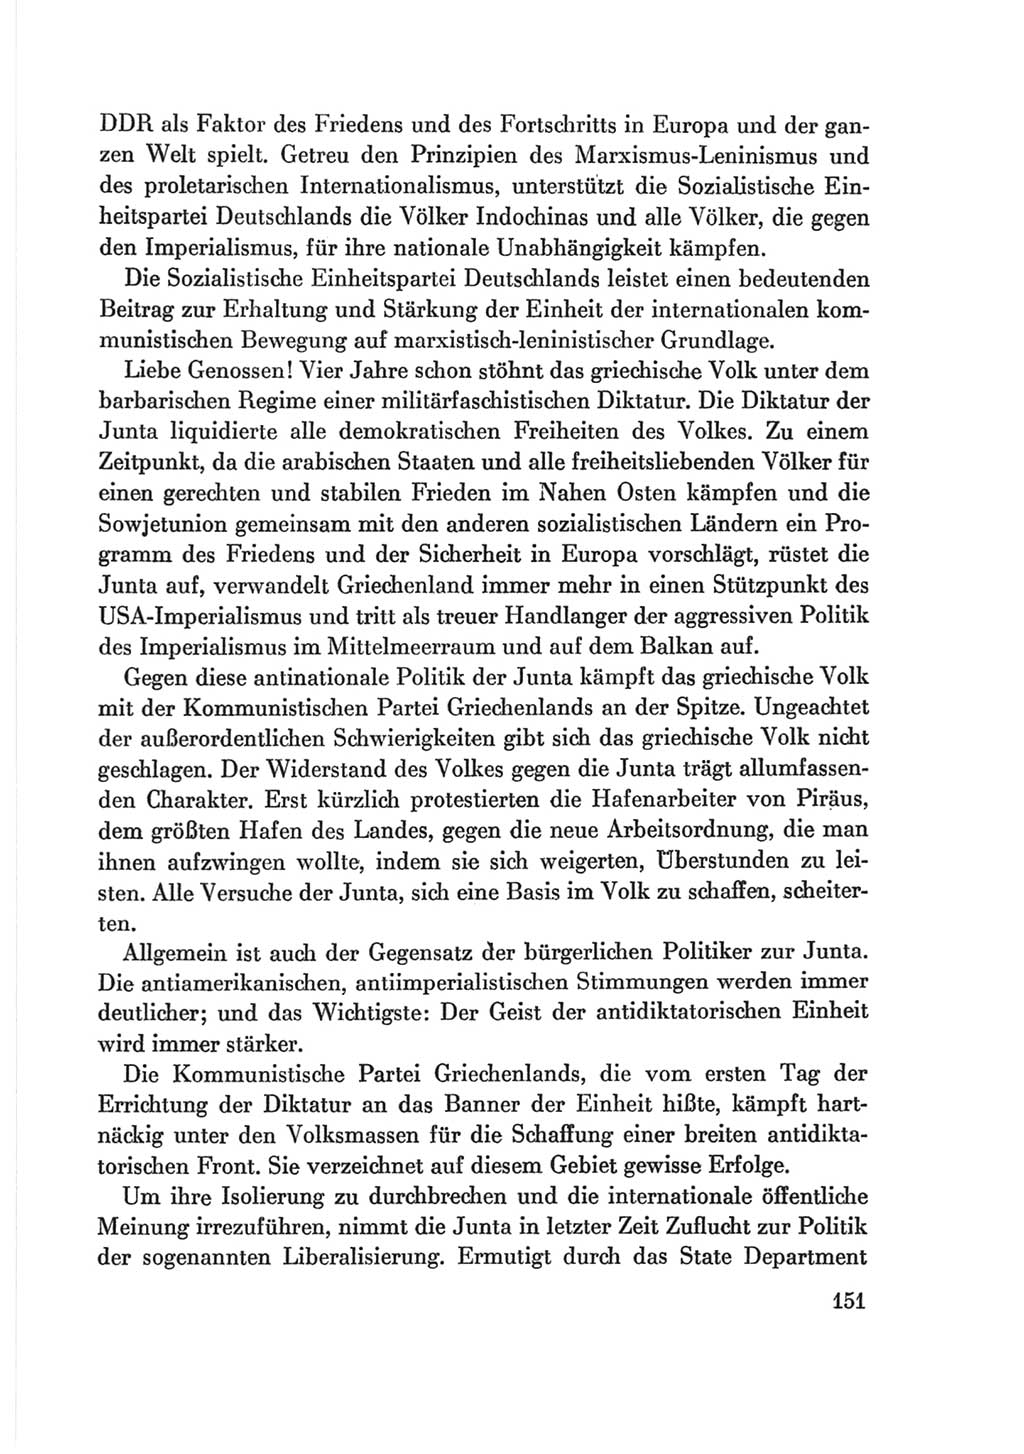 Protokoll der Verhandlungen des Ⅷ. Parteitages der Sozialistischen Einheitspartei Deutschlands (SED) [Deutsche Demokratische Republik (DDR)] 1971, Band 2, Seite 151 (Prot. Verh. Ⅷ. PT SED DDR 1971, Bd. 2, S. 151)